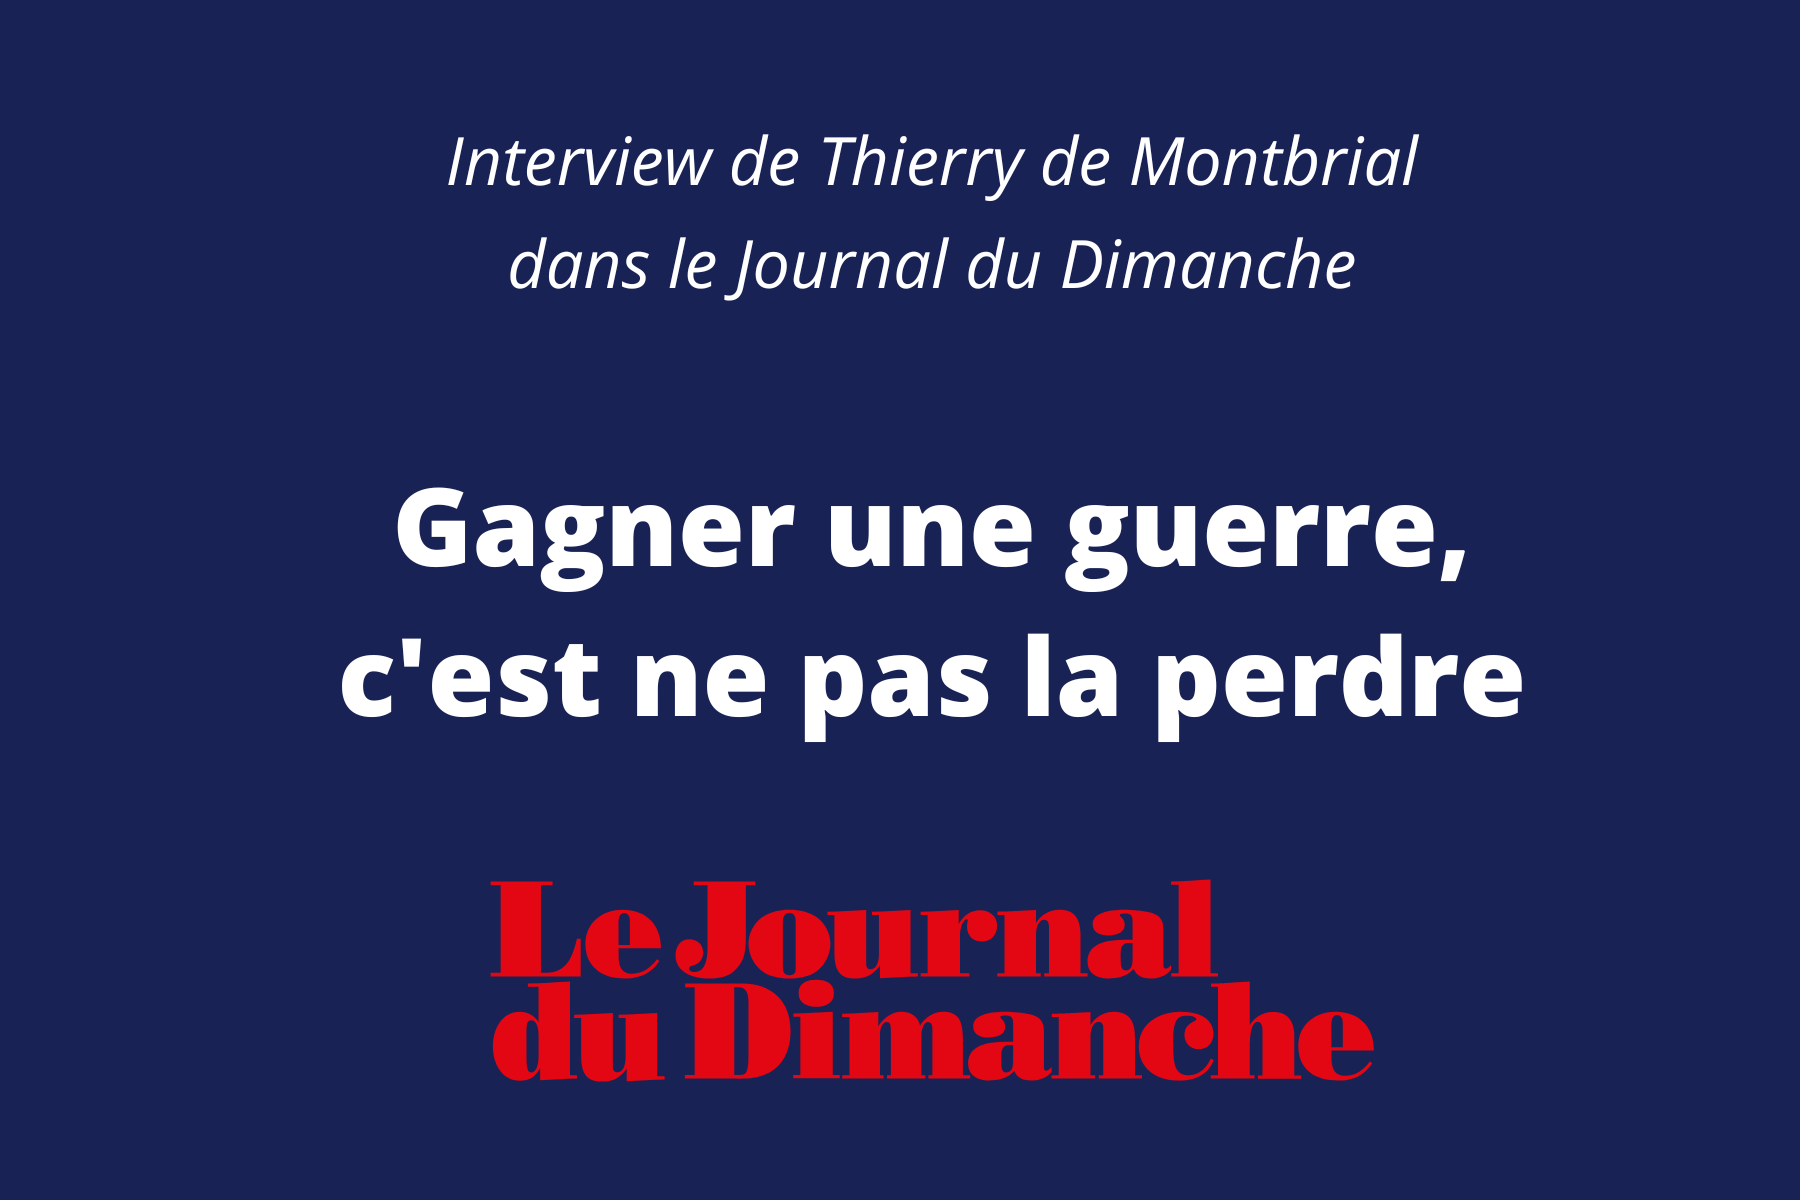 interview dans le journal du dimanche Thierry de montbrial